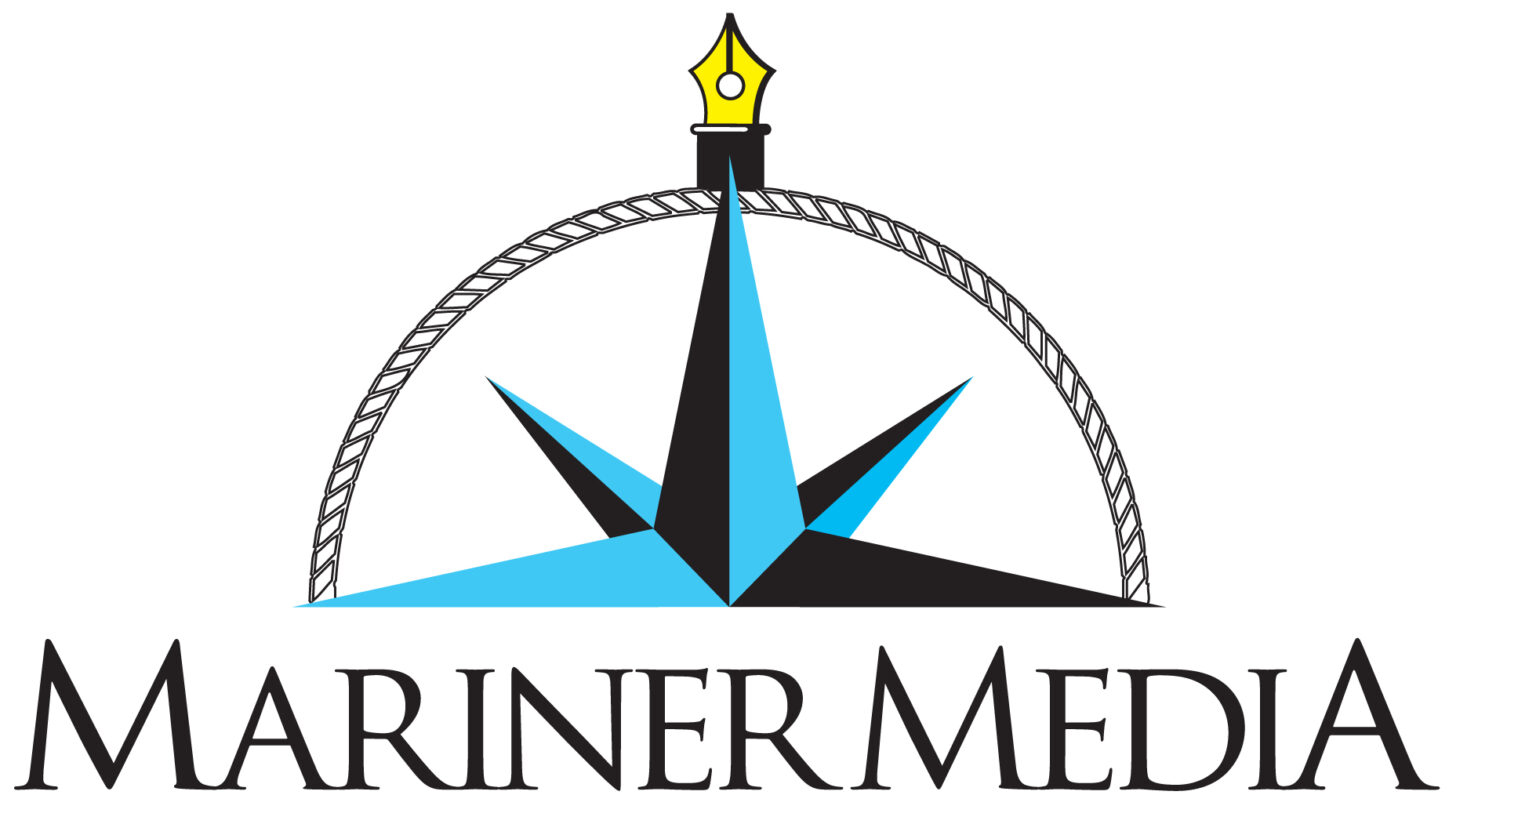 Mariner Media